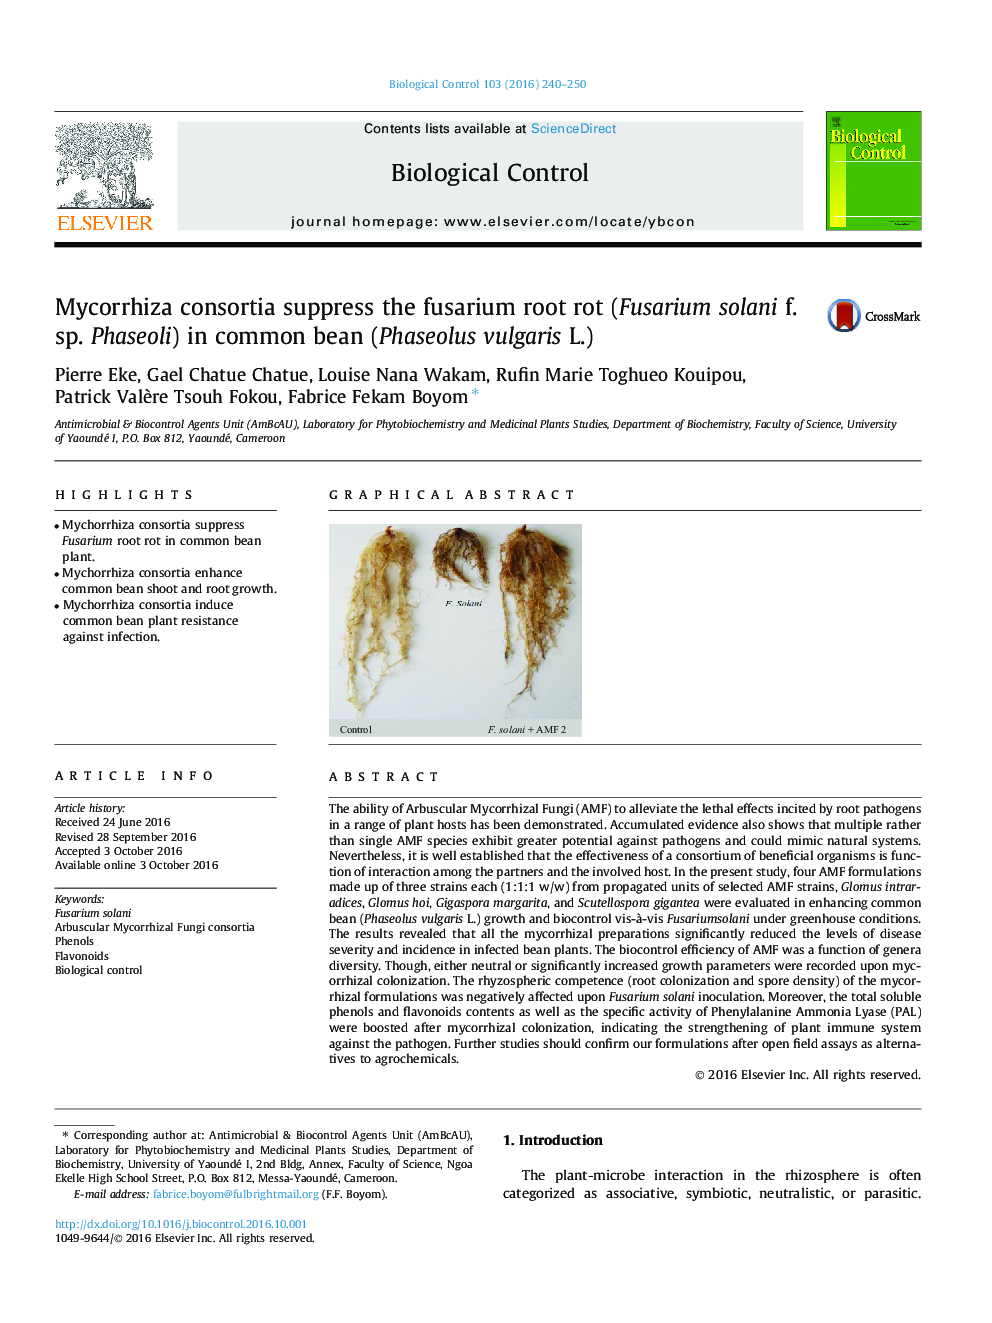 Mycorrhiza consortia suppress the fusarium root rot (Fusarium solani f. sp. Phaseoli) in common bean (Phaseolus vulgaris L.)